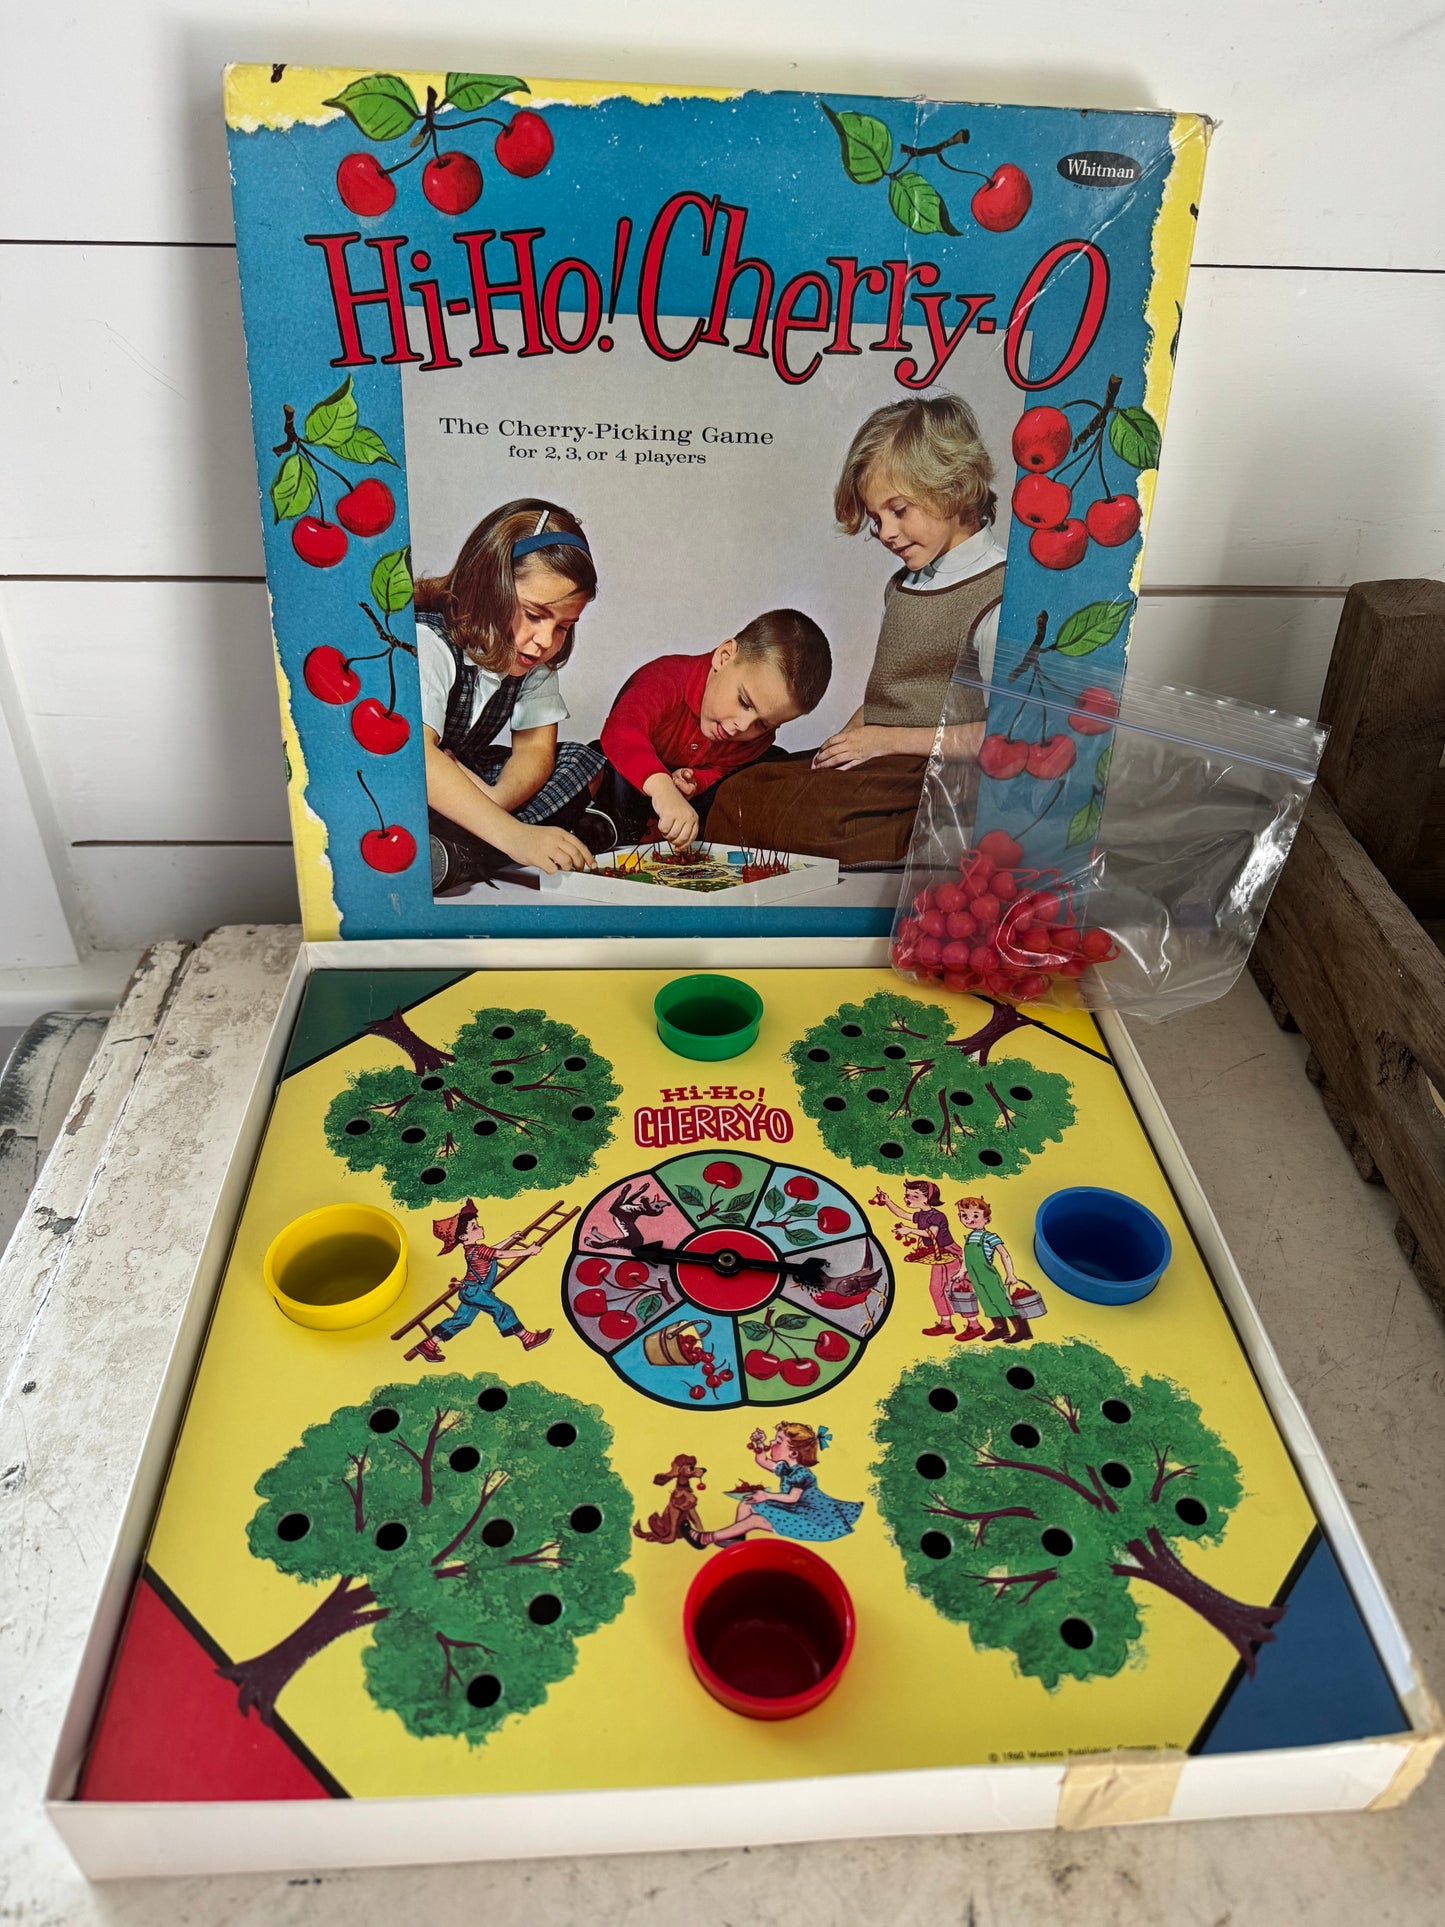 Vintage Hi-Ho! Cherry-O game